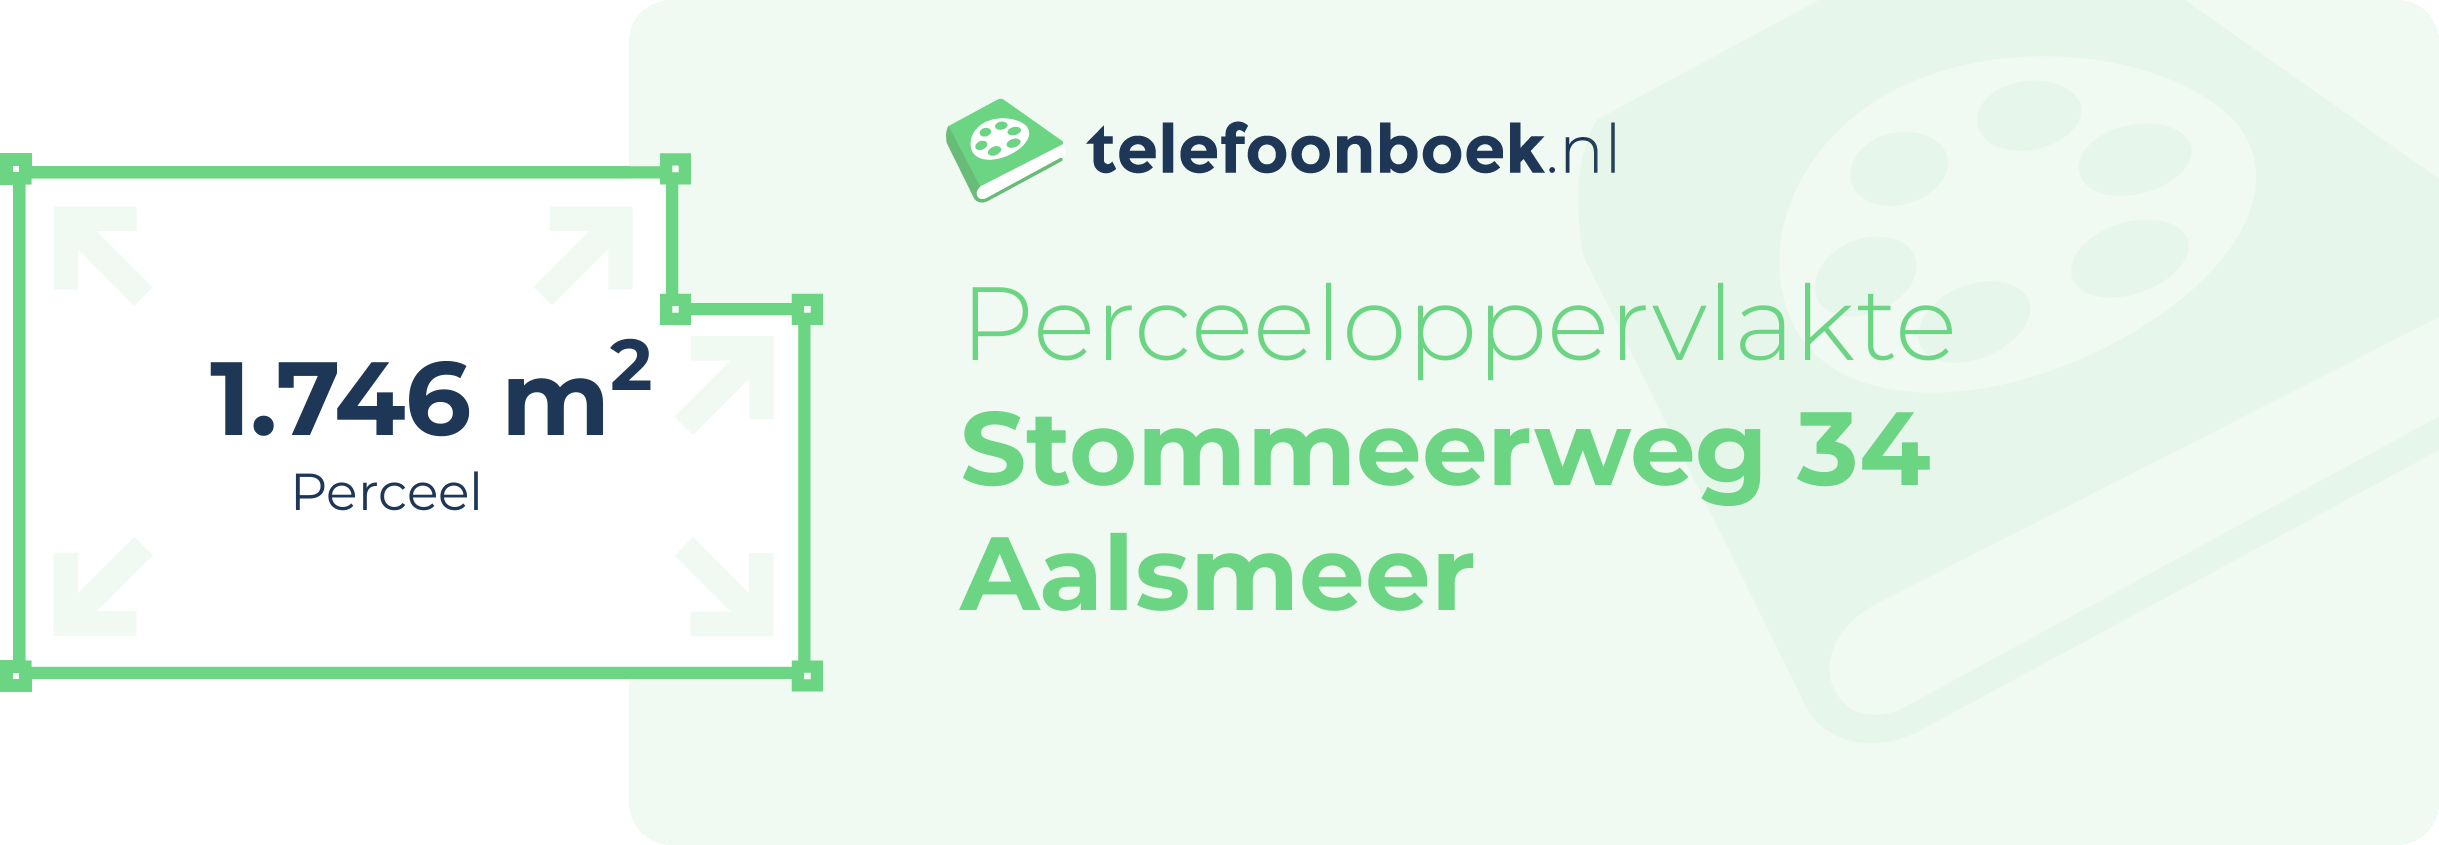 Perceeloppervlakte Stommeerweg 34 Aalsmeer